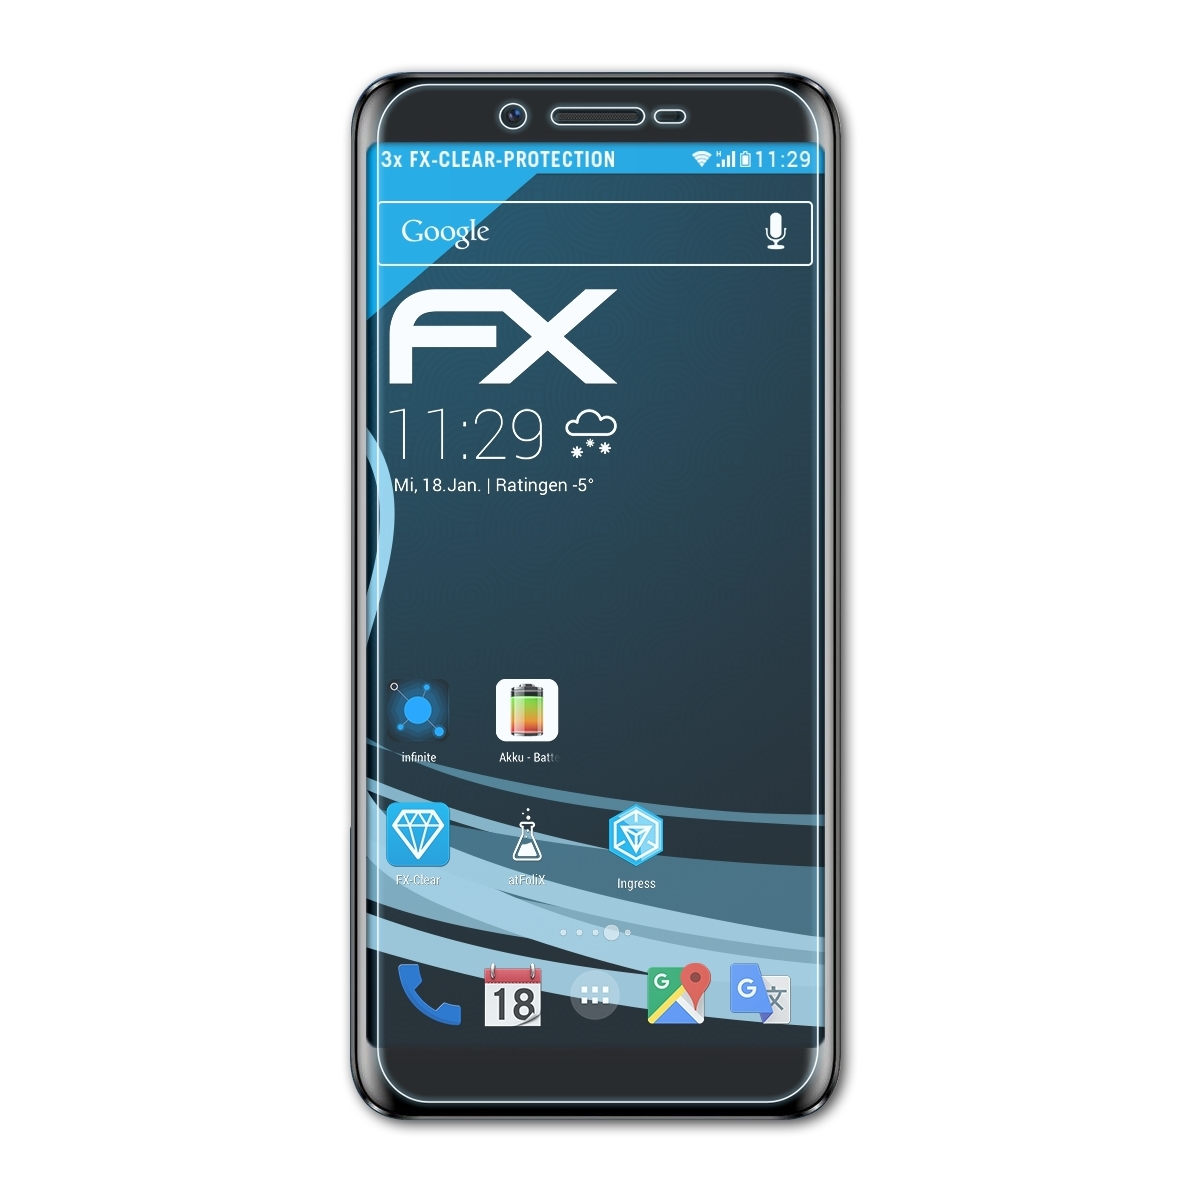 ATFOLIX 3x FX-Clear Displayschutz(für X60 L) Doogee